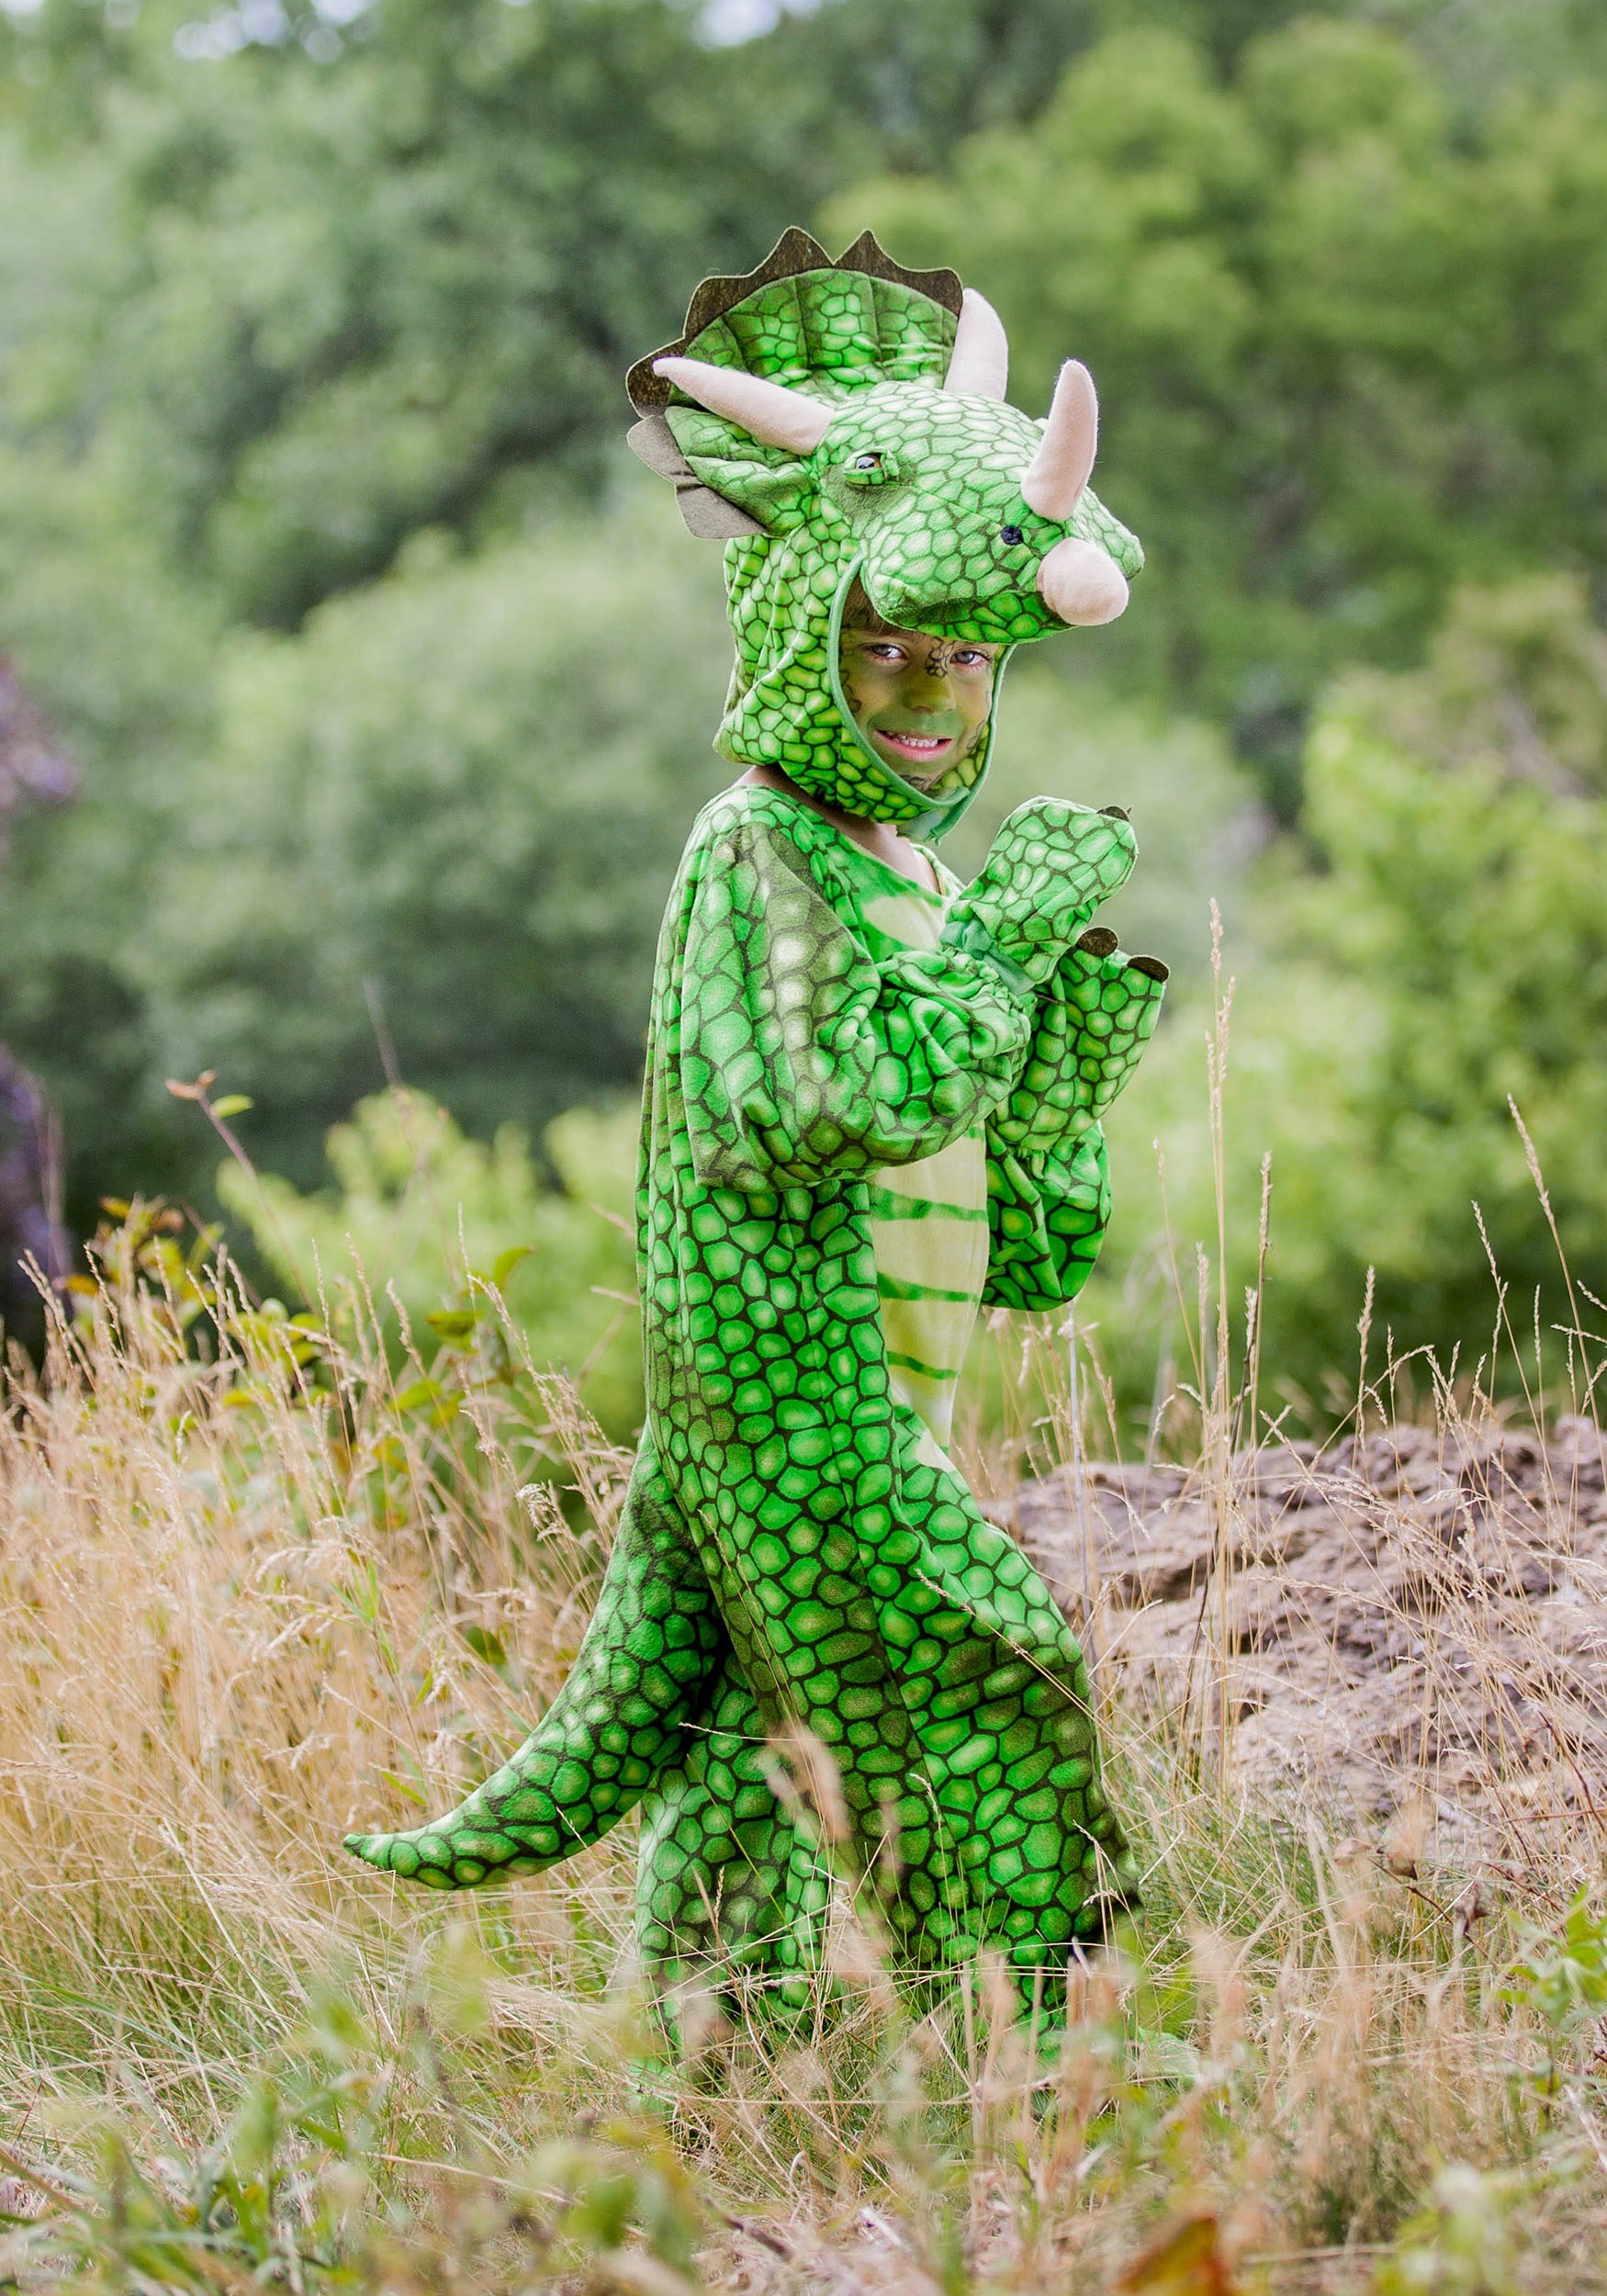 Traje de disfraz de triceratops, mono de dinosaurio verde, disfraz